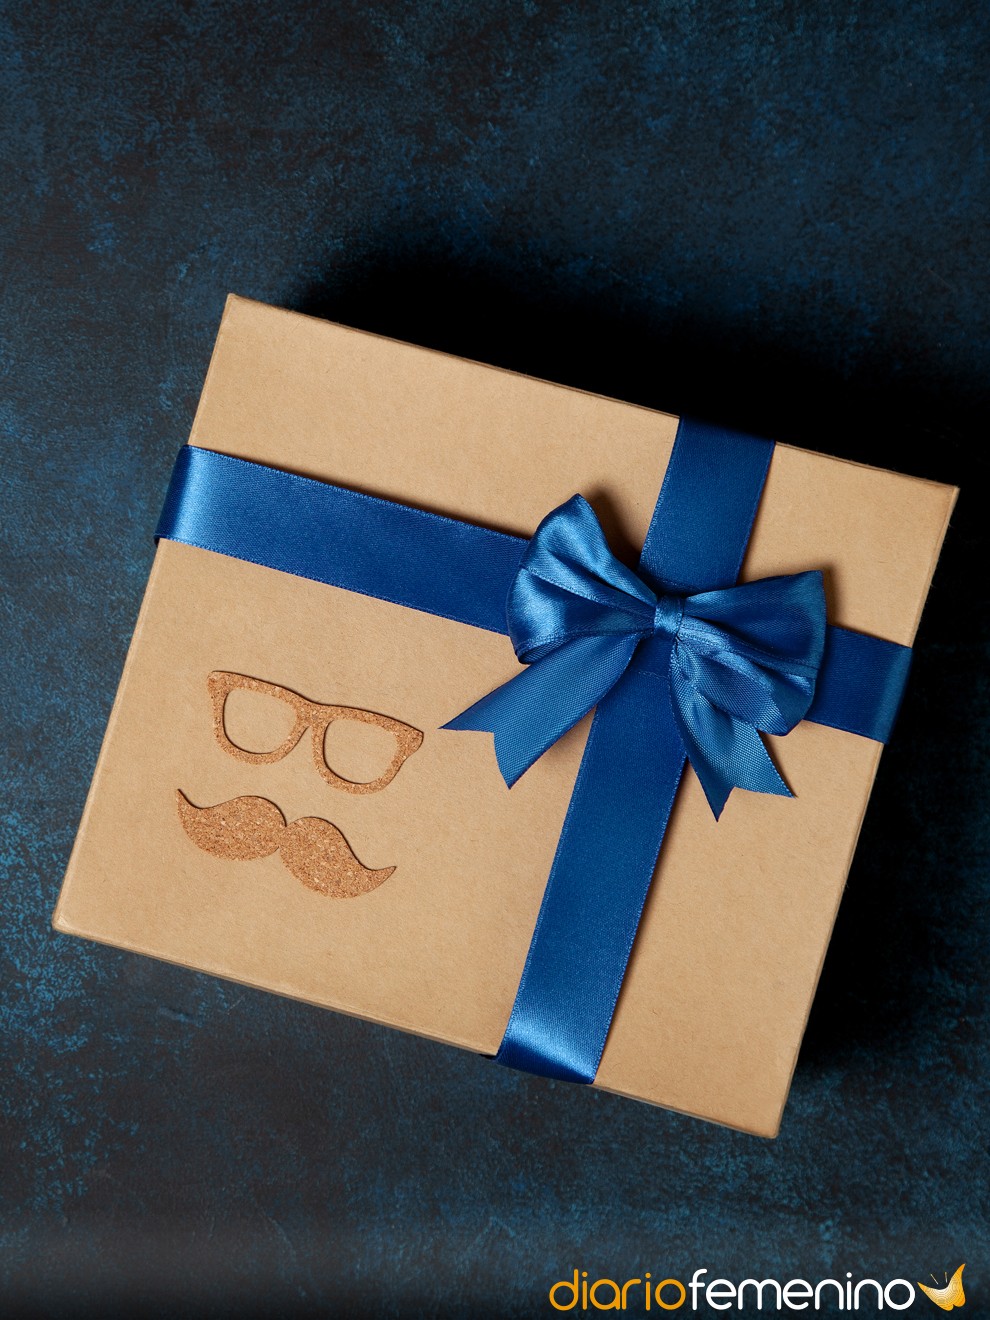 10 ideas de regalos originales para el día del padre